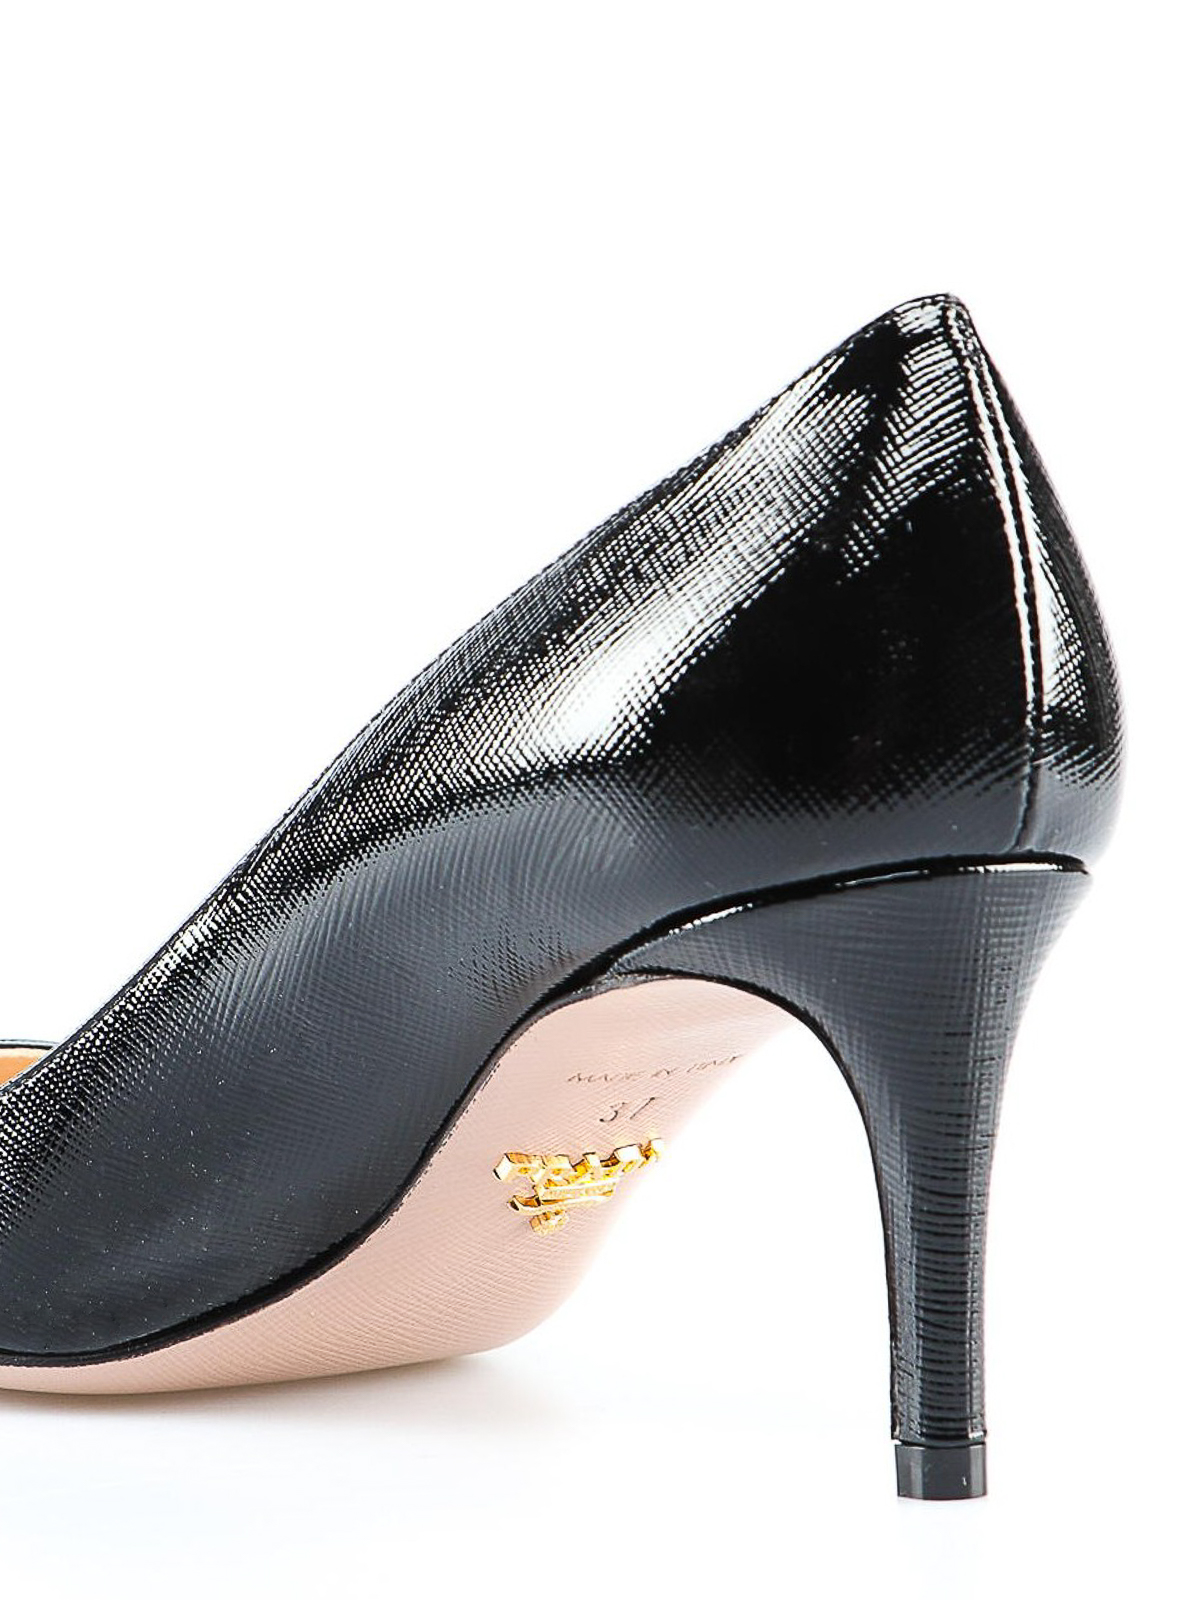 Court shoes Prada - Saffiano patent leather pumps - 1I834I3A9SF65002